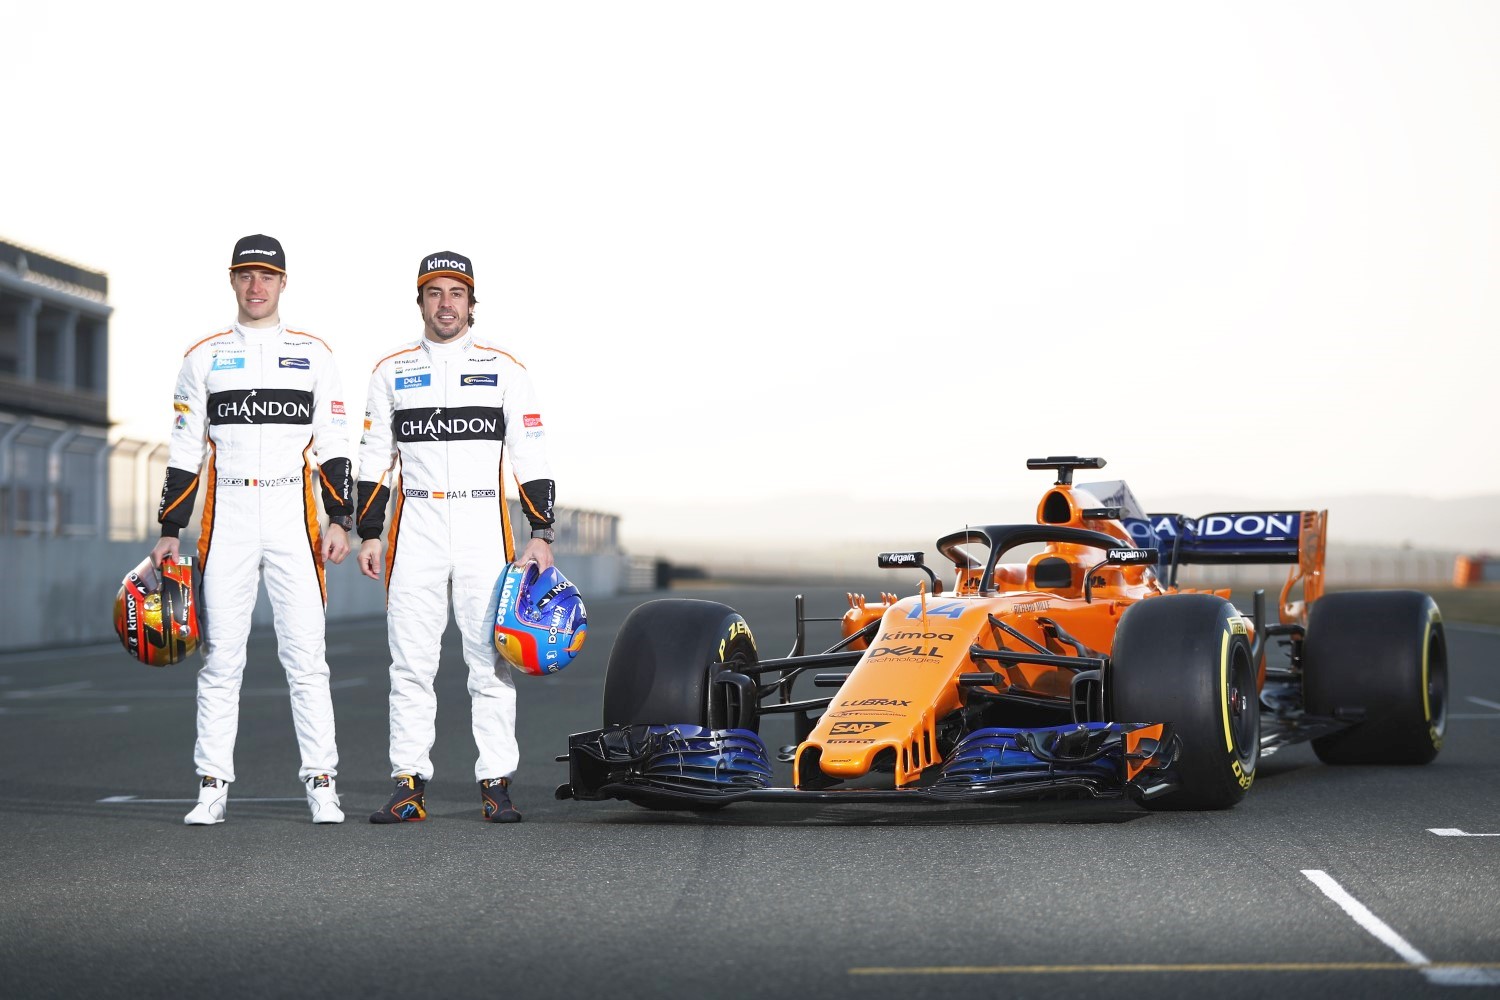 The McLaren Halo gets charity sponsor